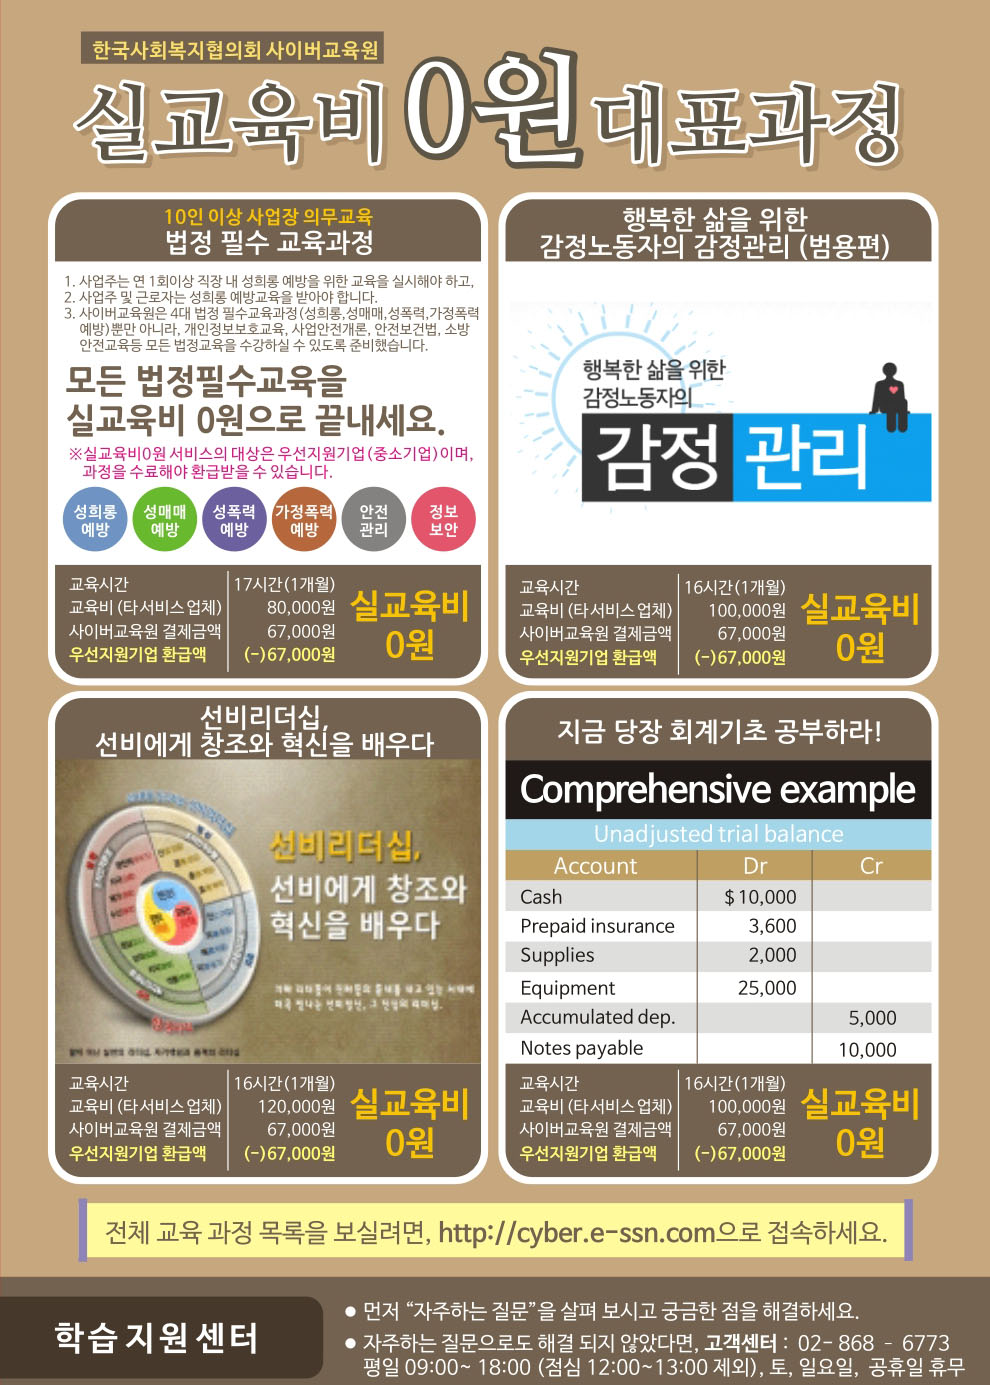 한국사회복지협의회 사이버교육원 서비스 안내, 문의안내:02-2077-3927